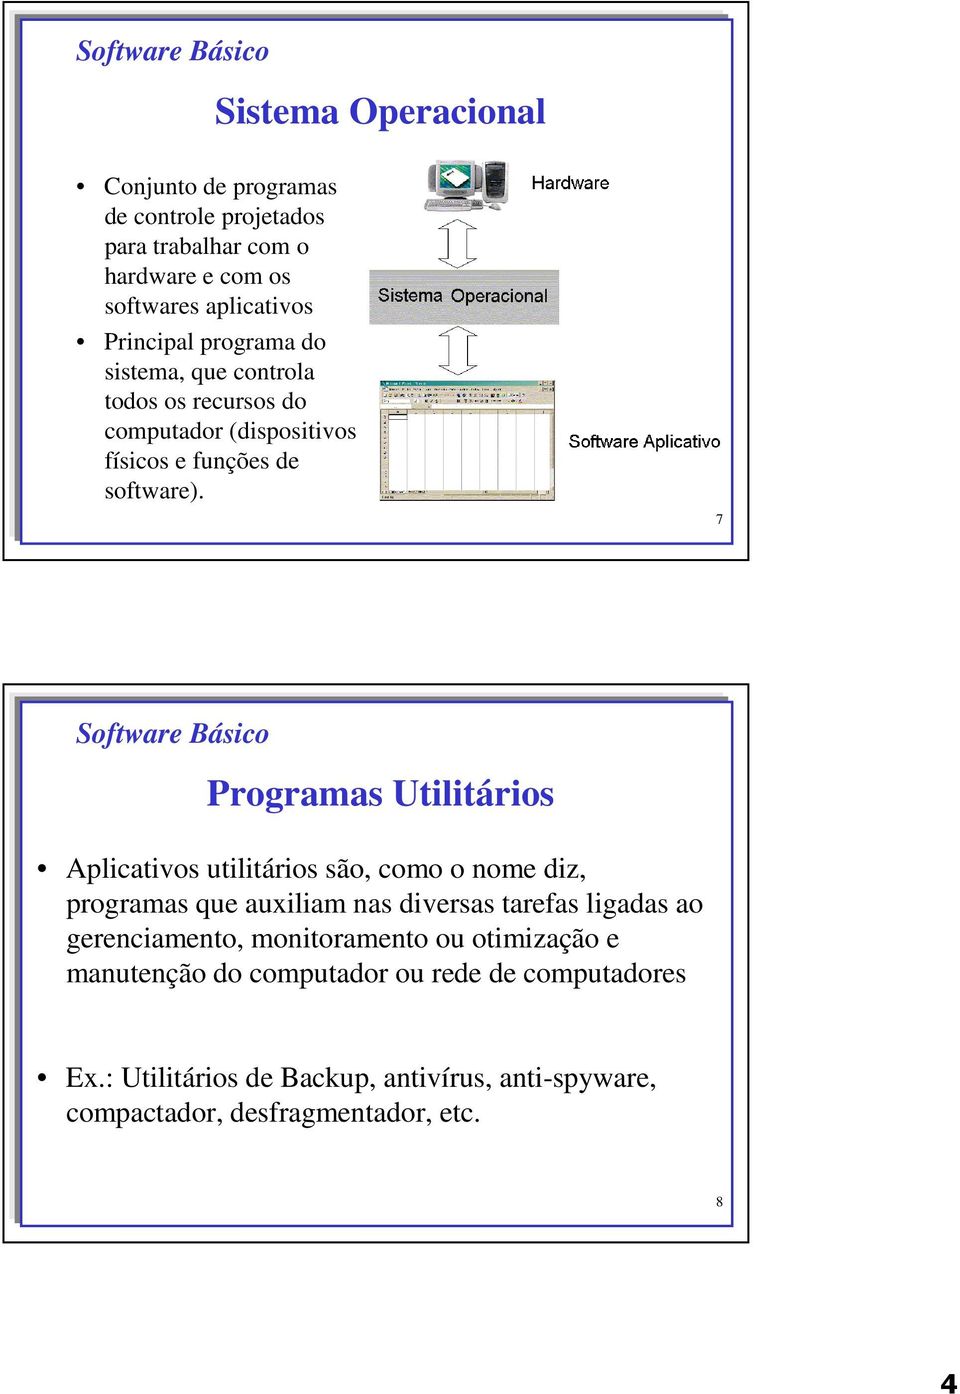 7 Software Básico Programas Utilitários Aplicativos utilitários são, como o nome diz, programas que auxiliam nas diversas tarefas ligadas ao